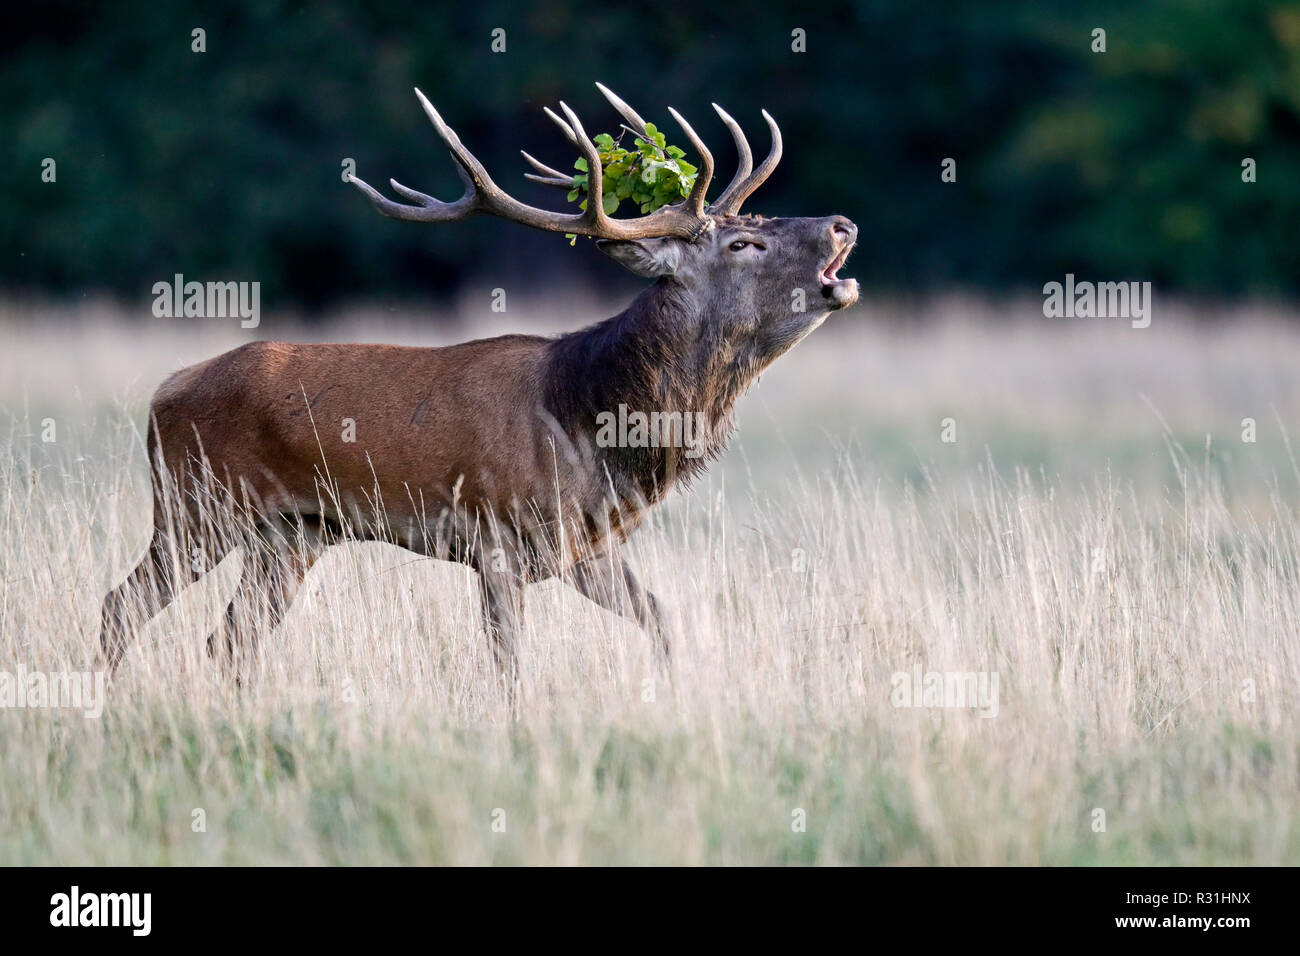 Red deer (Cervus elaphus), rutting season, deer roars, Denmark Stock Photo